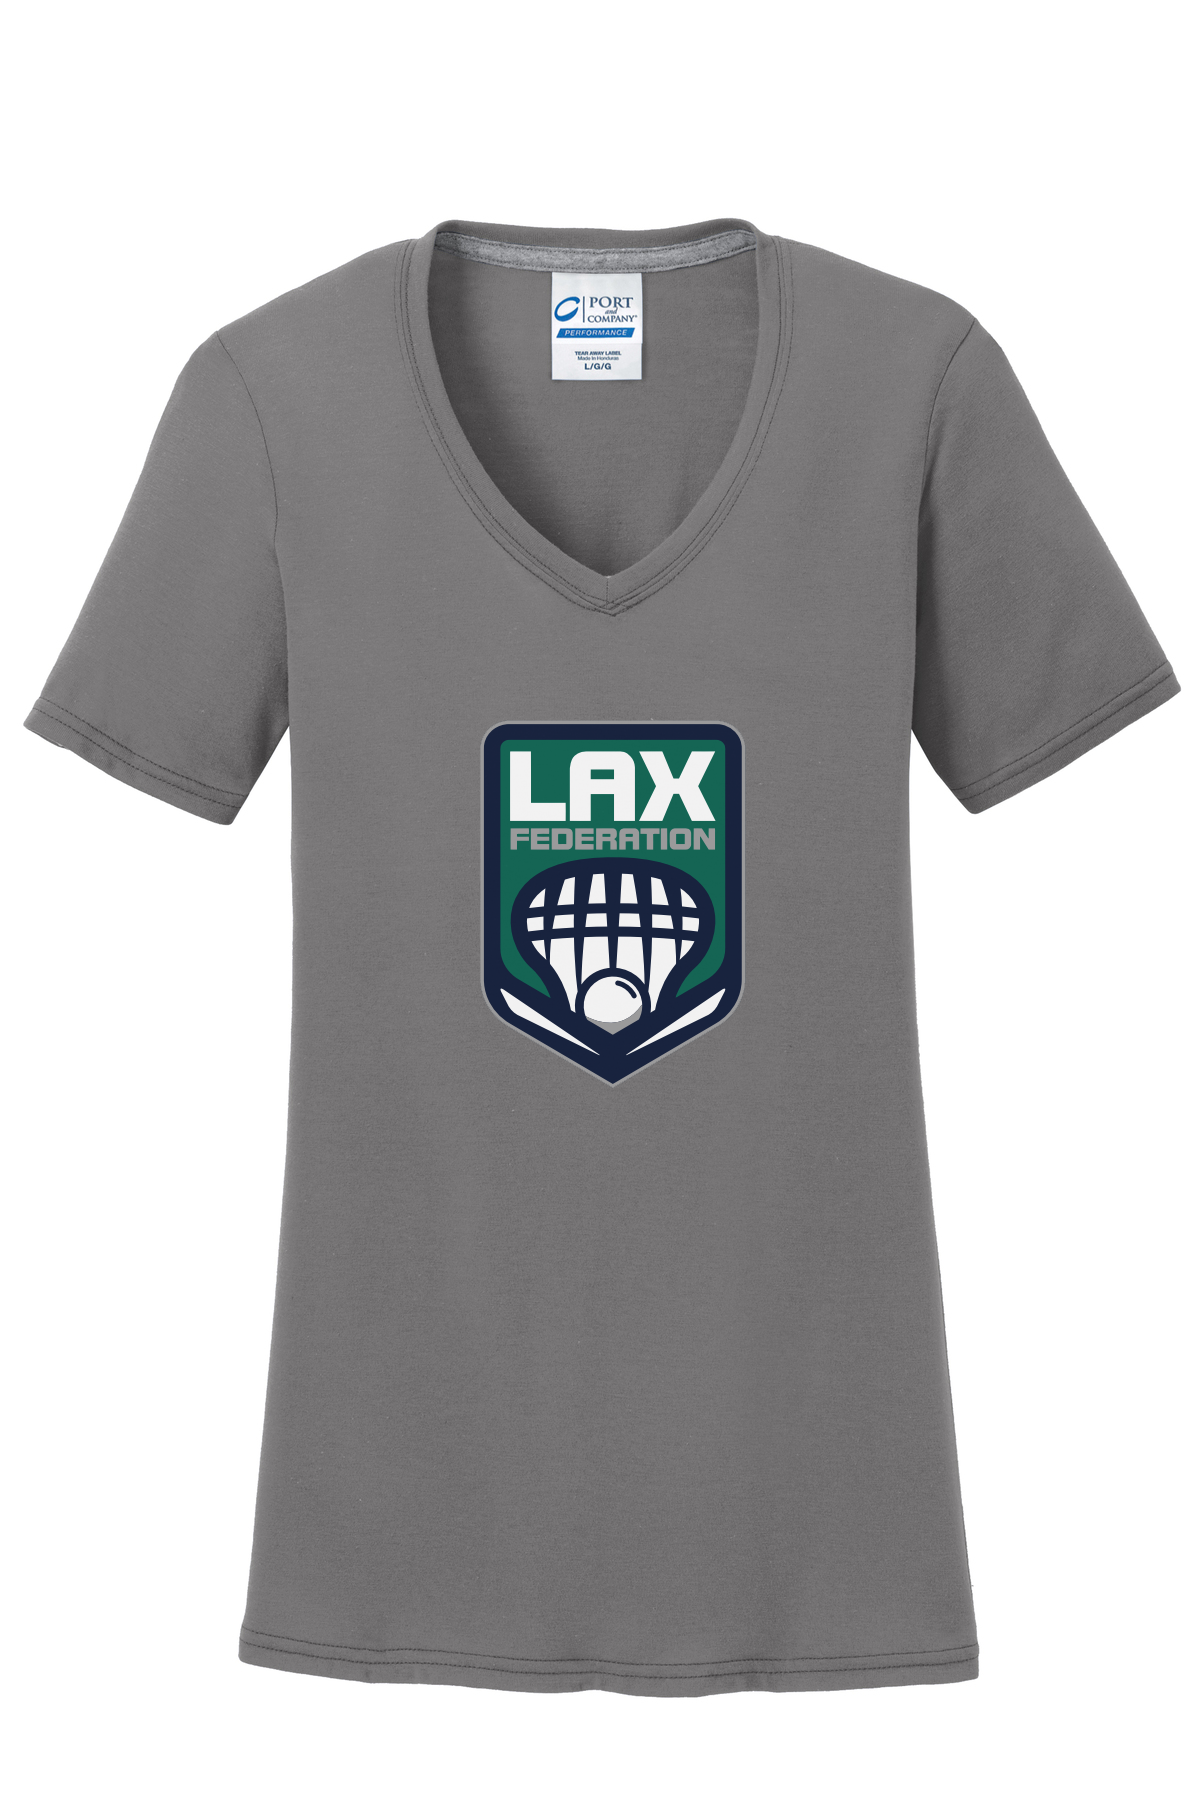 Lax Fed Women's T-Shirt